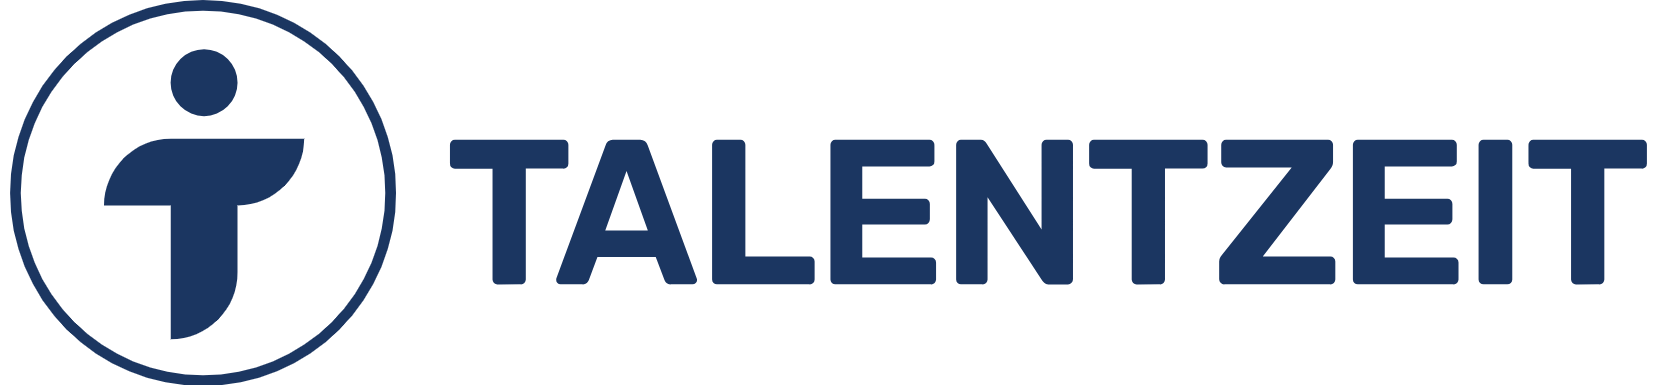 Talentzeit GmbH